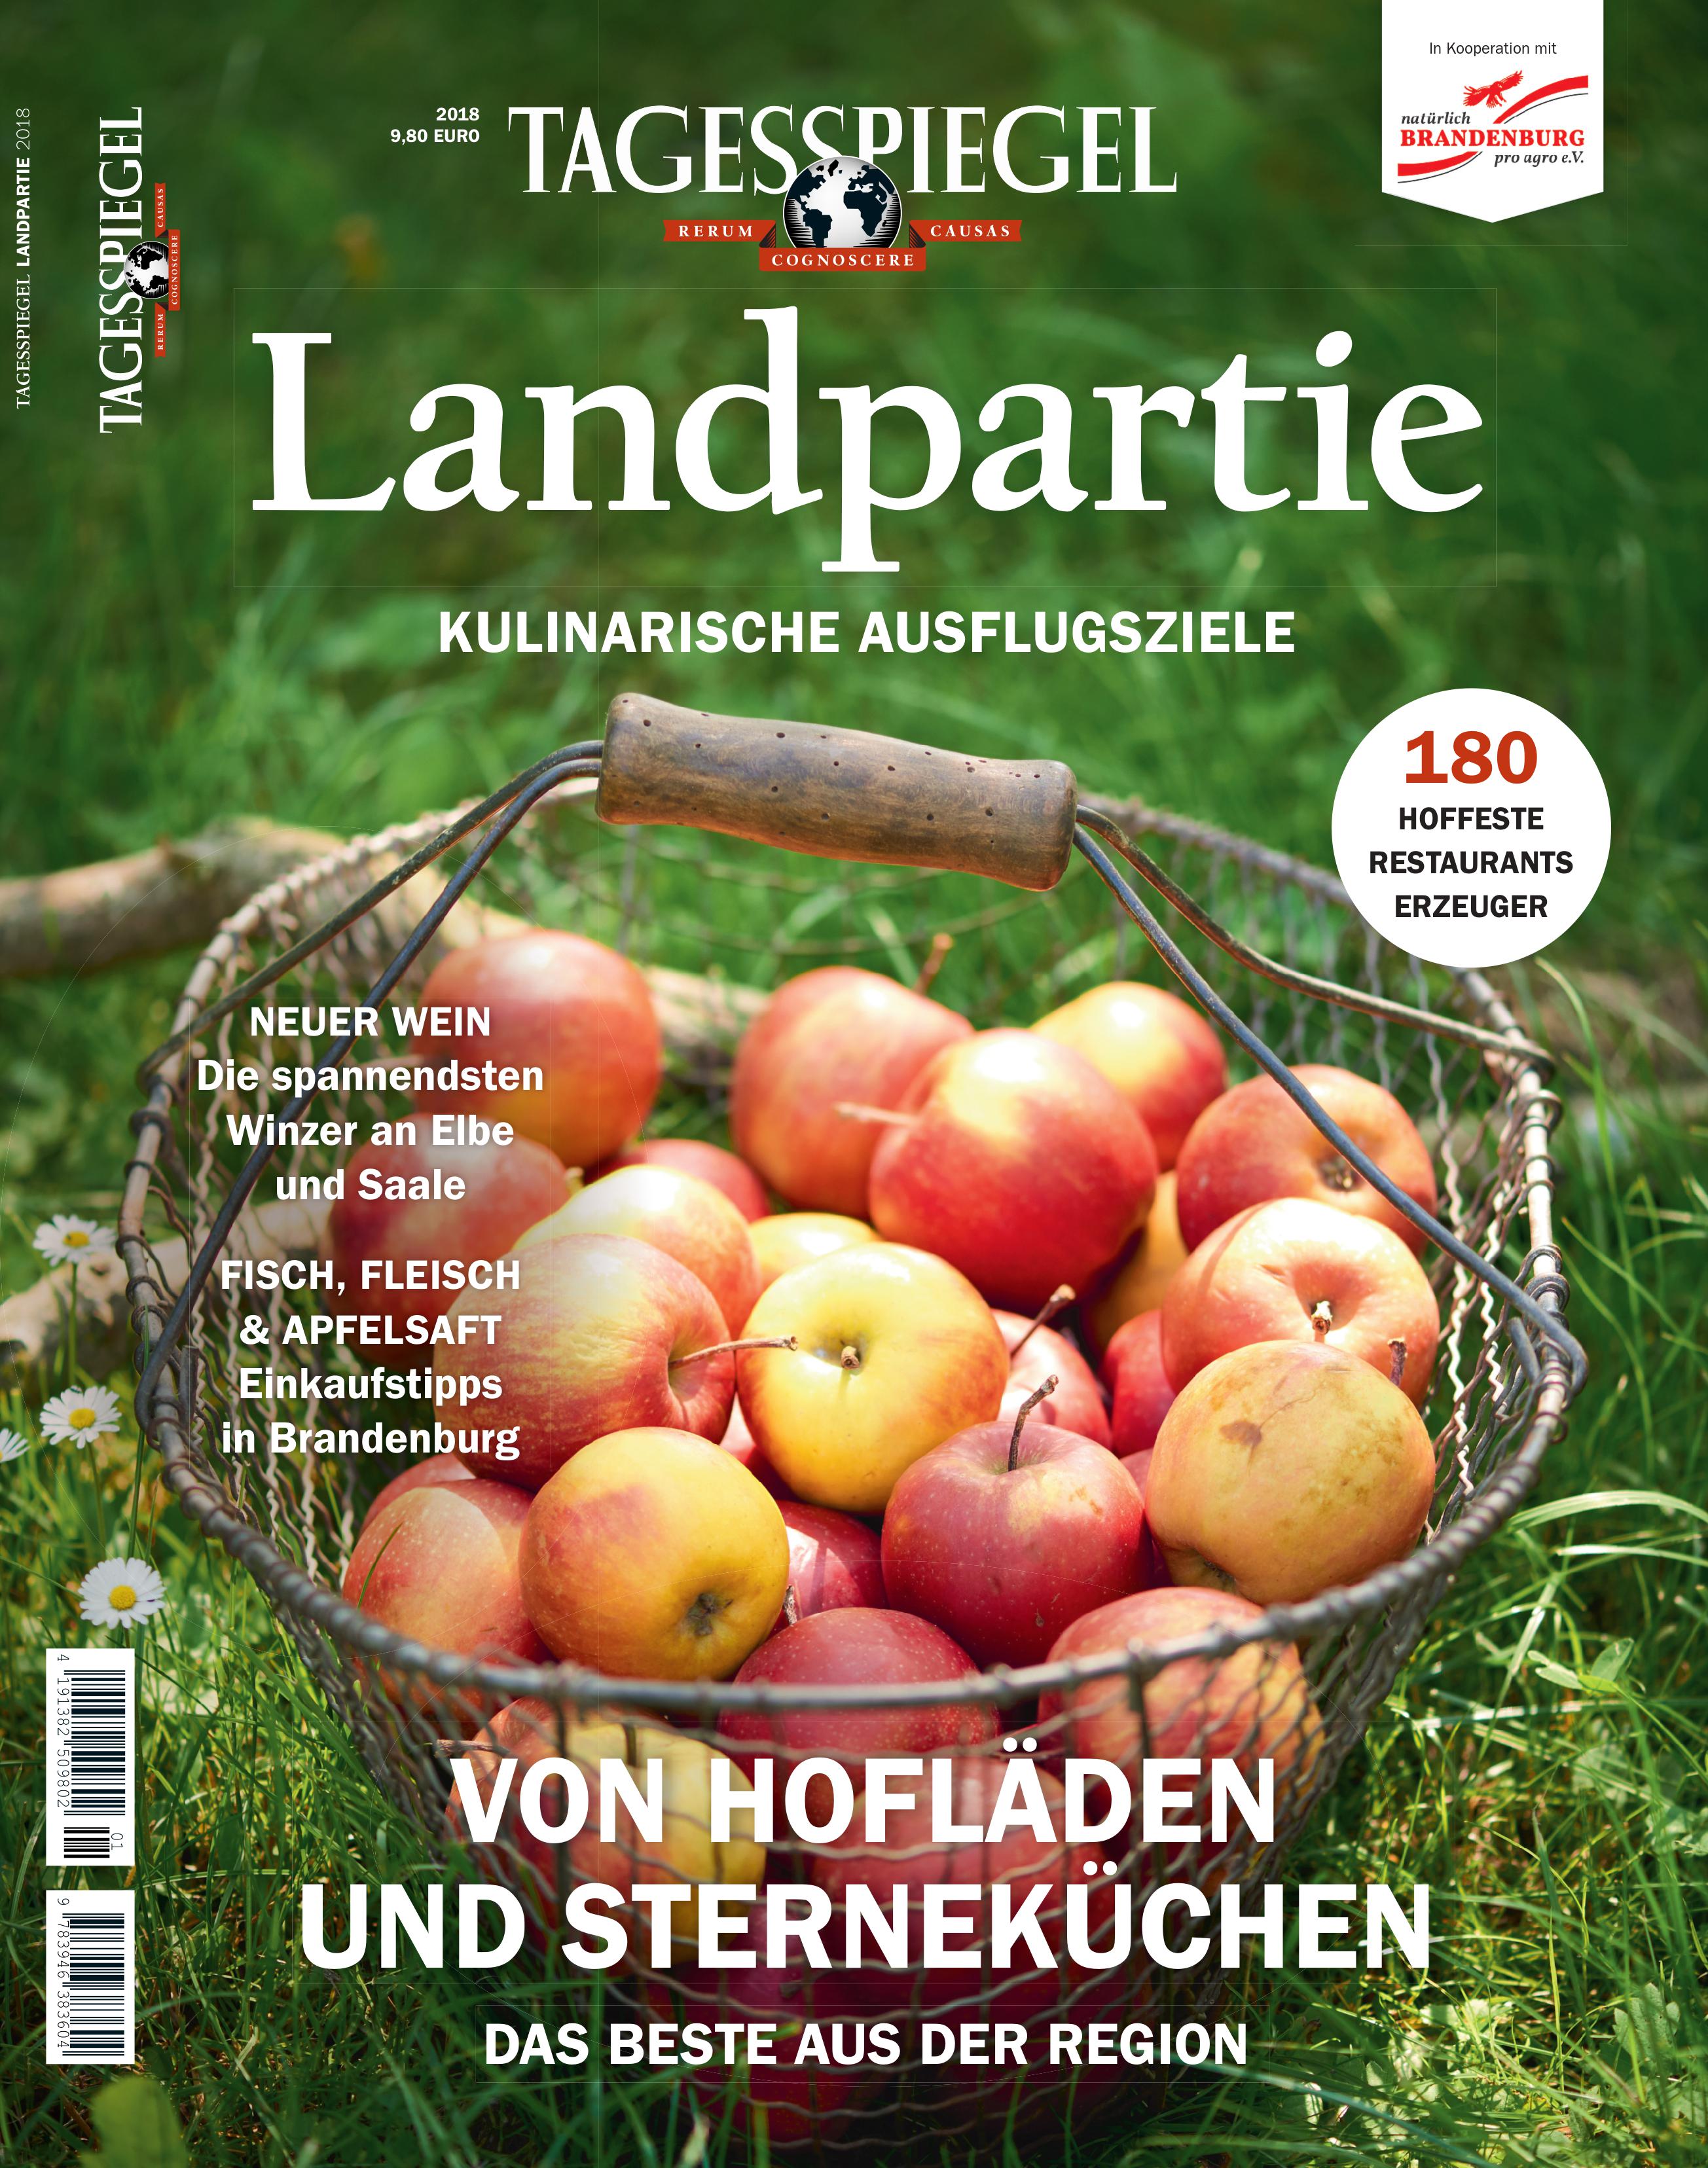 Verlag der Tagesspiegel GmbH Landpartie Tagesspiegel